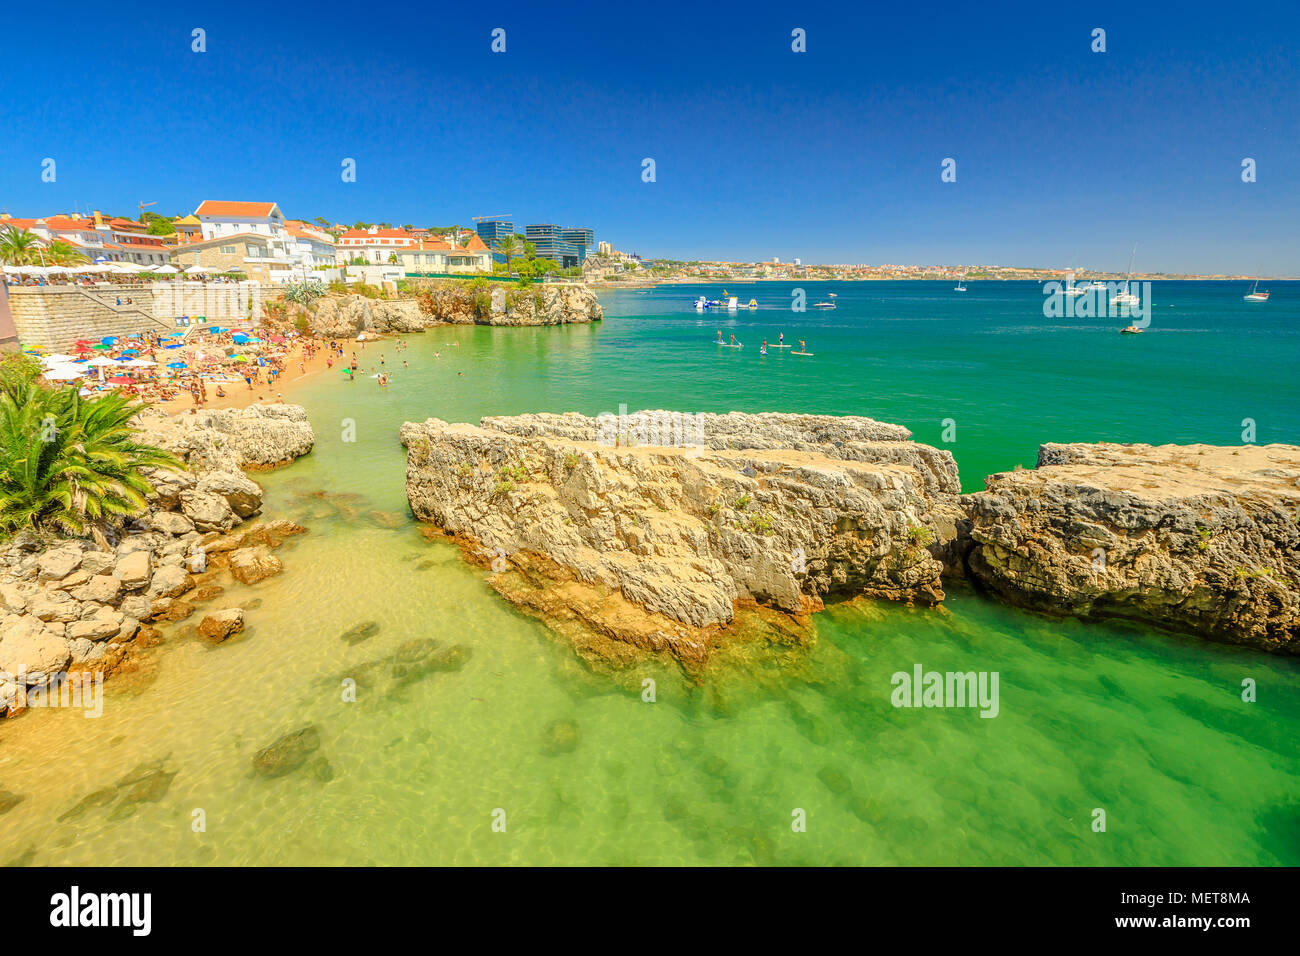 Paysage pittoresque de Praia da Rainha, petite plage avec des rochers dans le centre de Cascais, Portugal. Vue aérienne de la Côte de Lisbonne. Les gens à bronzer et à vous baigner dans la mer turquoise pendant les vacances.Copy space Banque D'Images